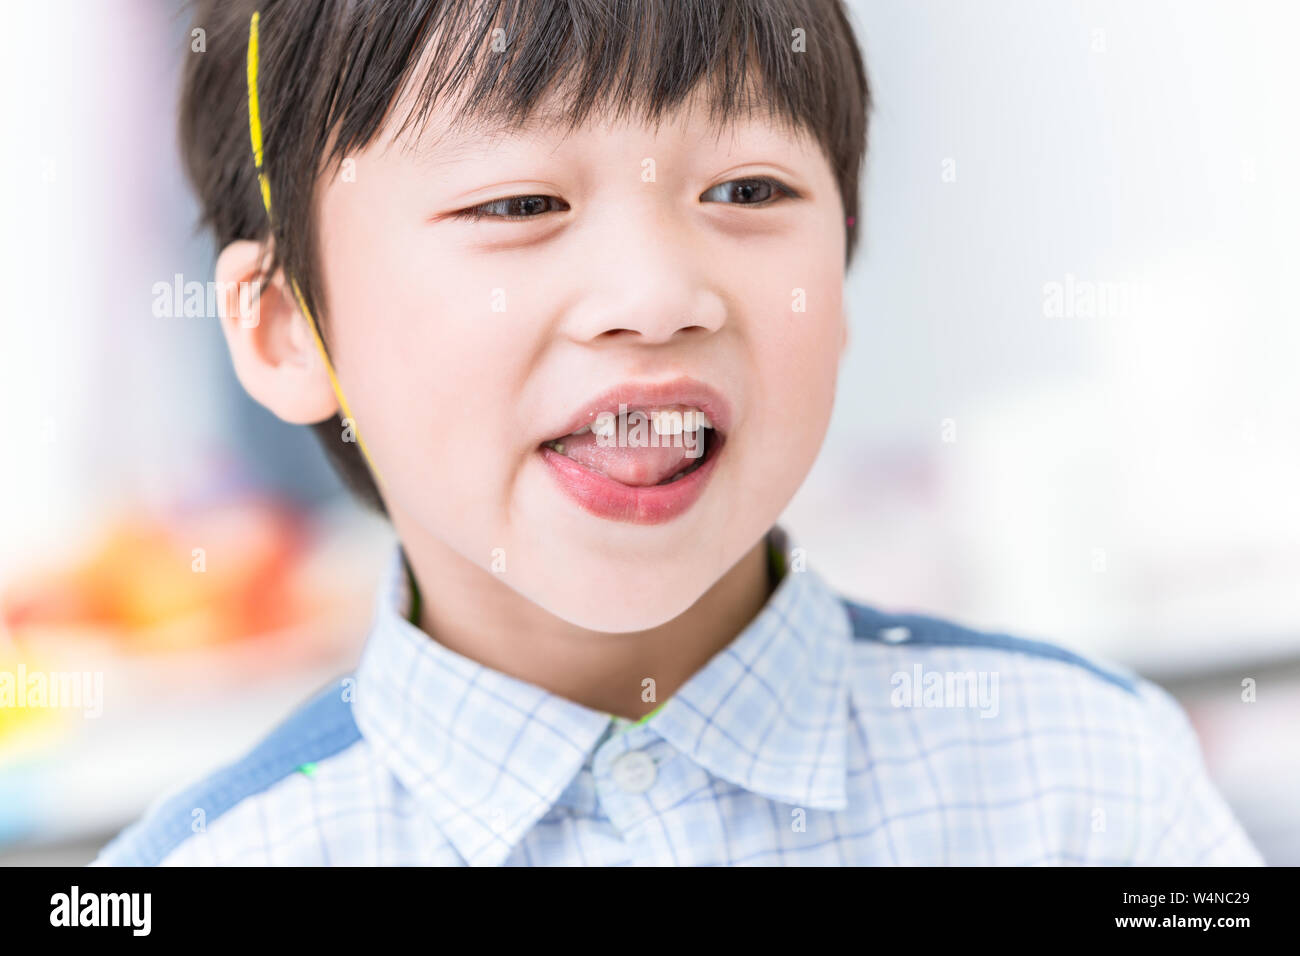 Garçon dent perdue font. Manque de dents chez les enfants ou problème dentaire Banque D'Images